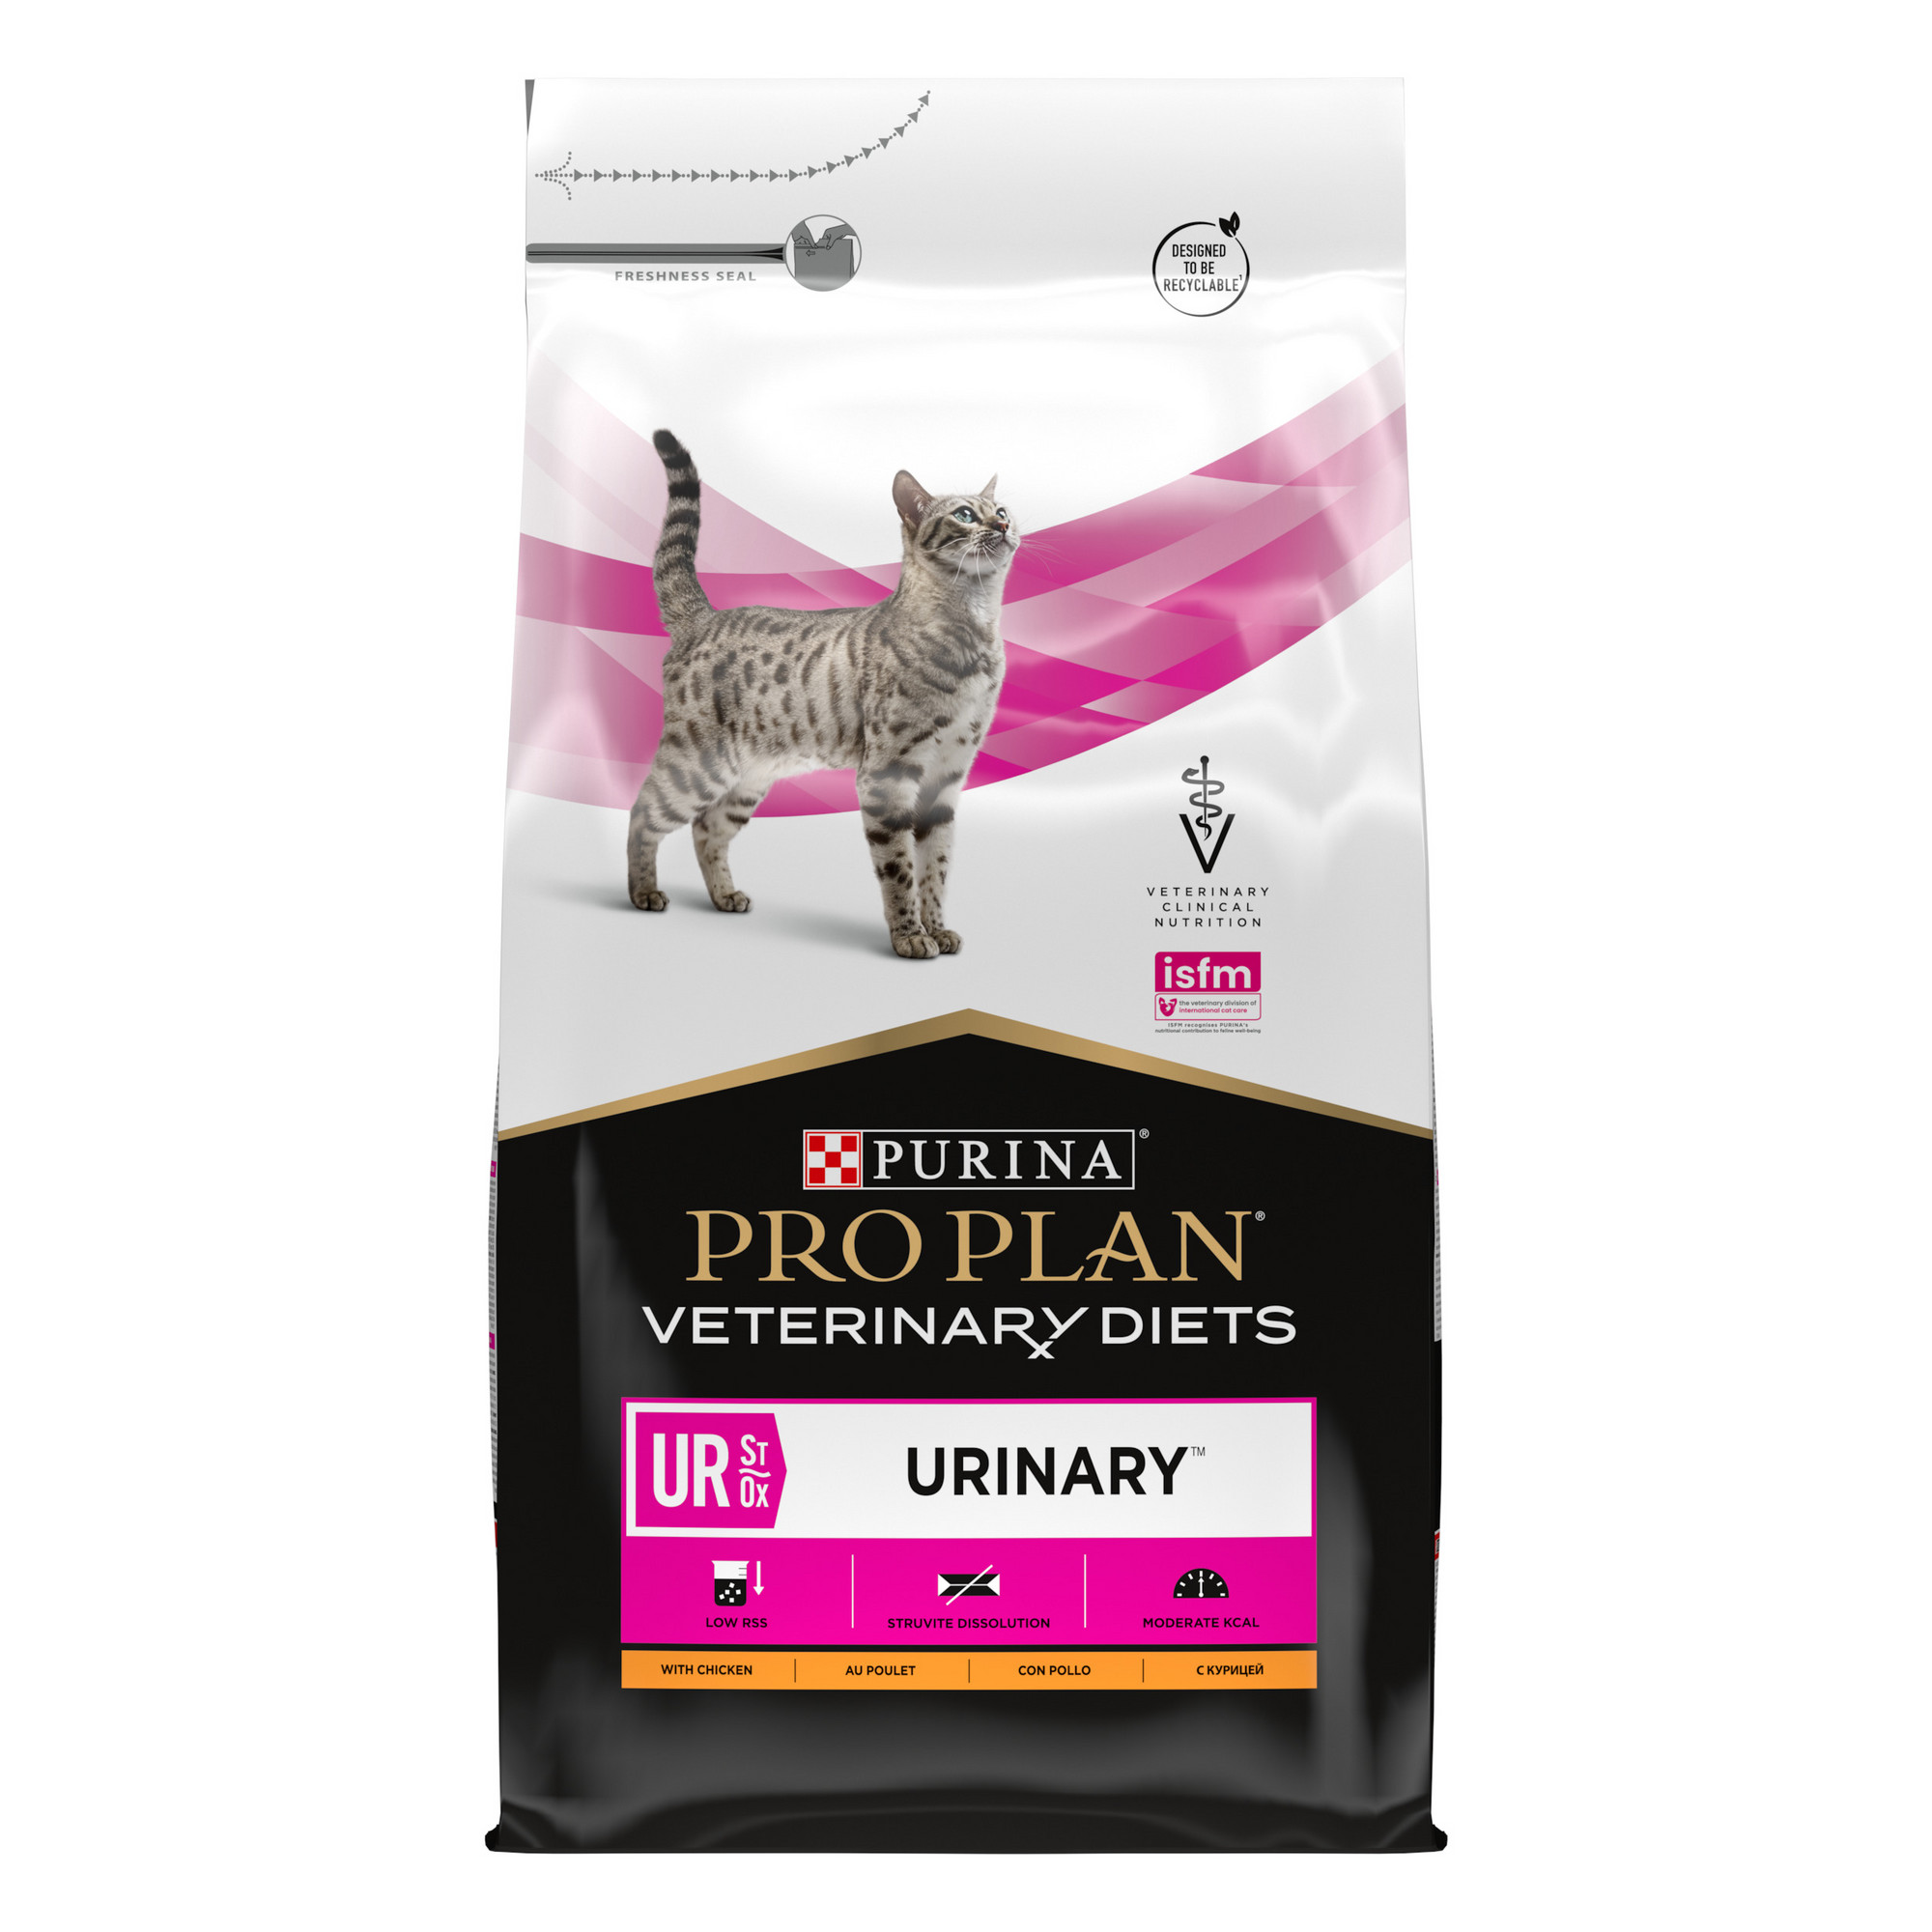 Сухой корм для кошек PRO PLAN Veterinary Diets UR Urinary, c курицей, 5 кг